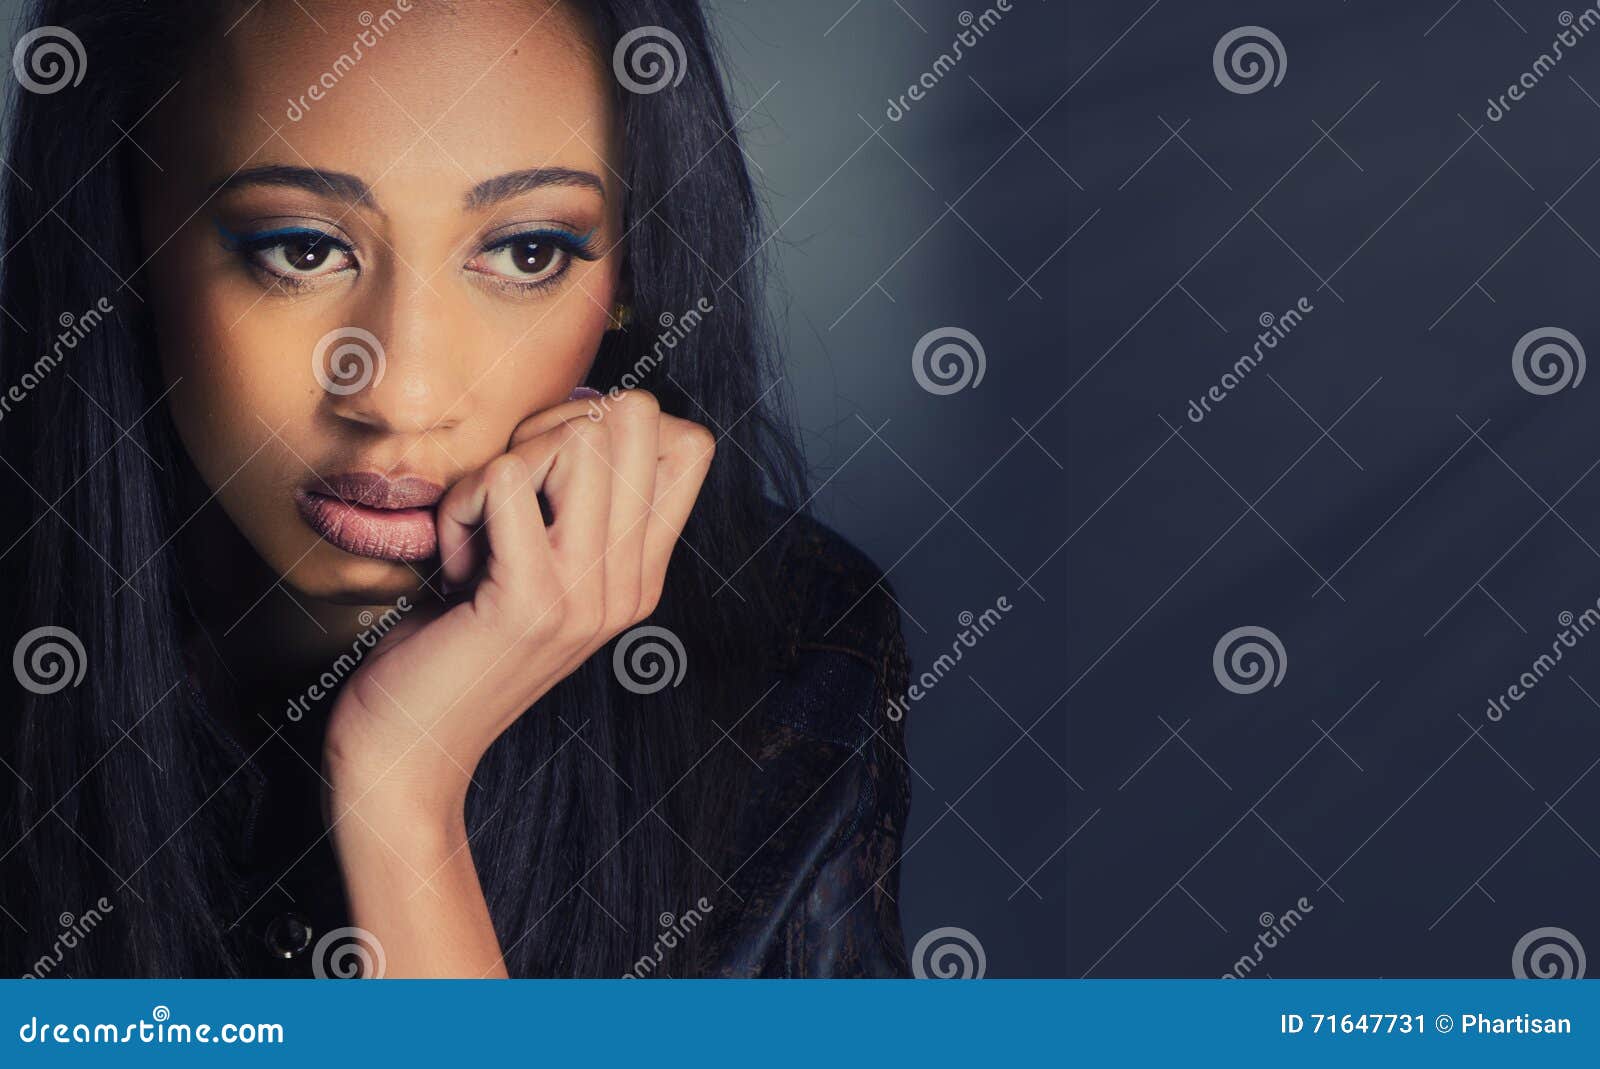 woman looking sad unhappy